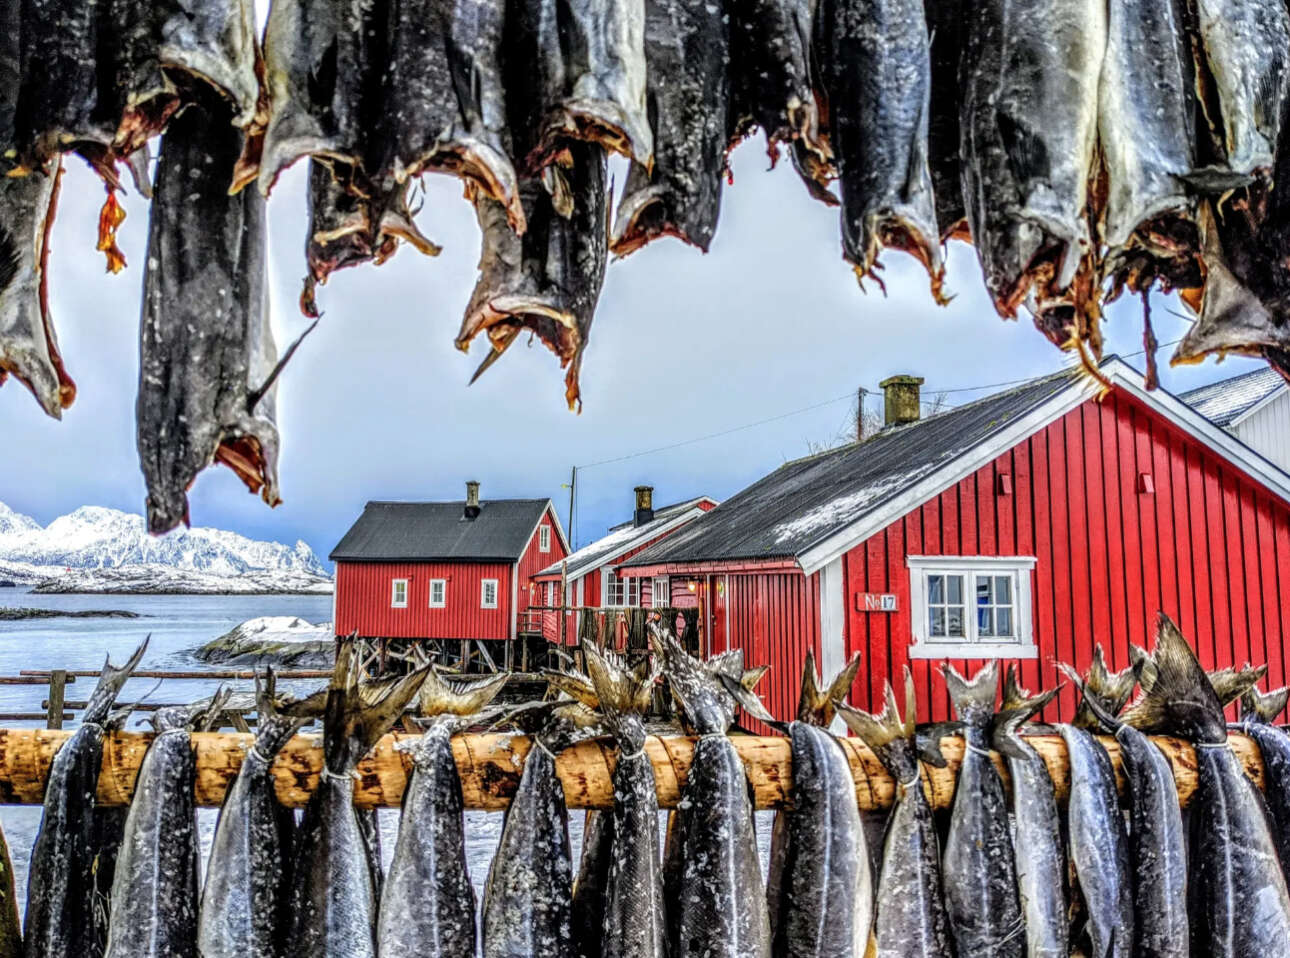 Στο αρχιπέλαγος Λοφότεν της Νορβηγίας, τα κρεμασμένα ψάρια έχουν γίνει μέρος του τοπίου. Ο μπακαλιάρος συντηρείται αφήνοντας τον να στεγνώσει πάνω σε μεγάλες βάσεις, χωρίς να χρειάζεται αλάτι ή καπνός, καθώς οι θερμοκρασίες είναι λίγο κάτω από το μηδέν. Το κλίμα είναι τέλειο για την παραγωγή παστών ψαριών σε εξωτερικό χώρο